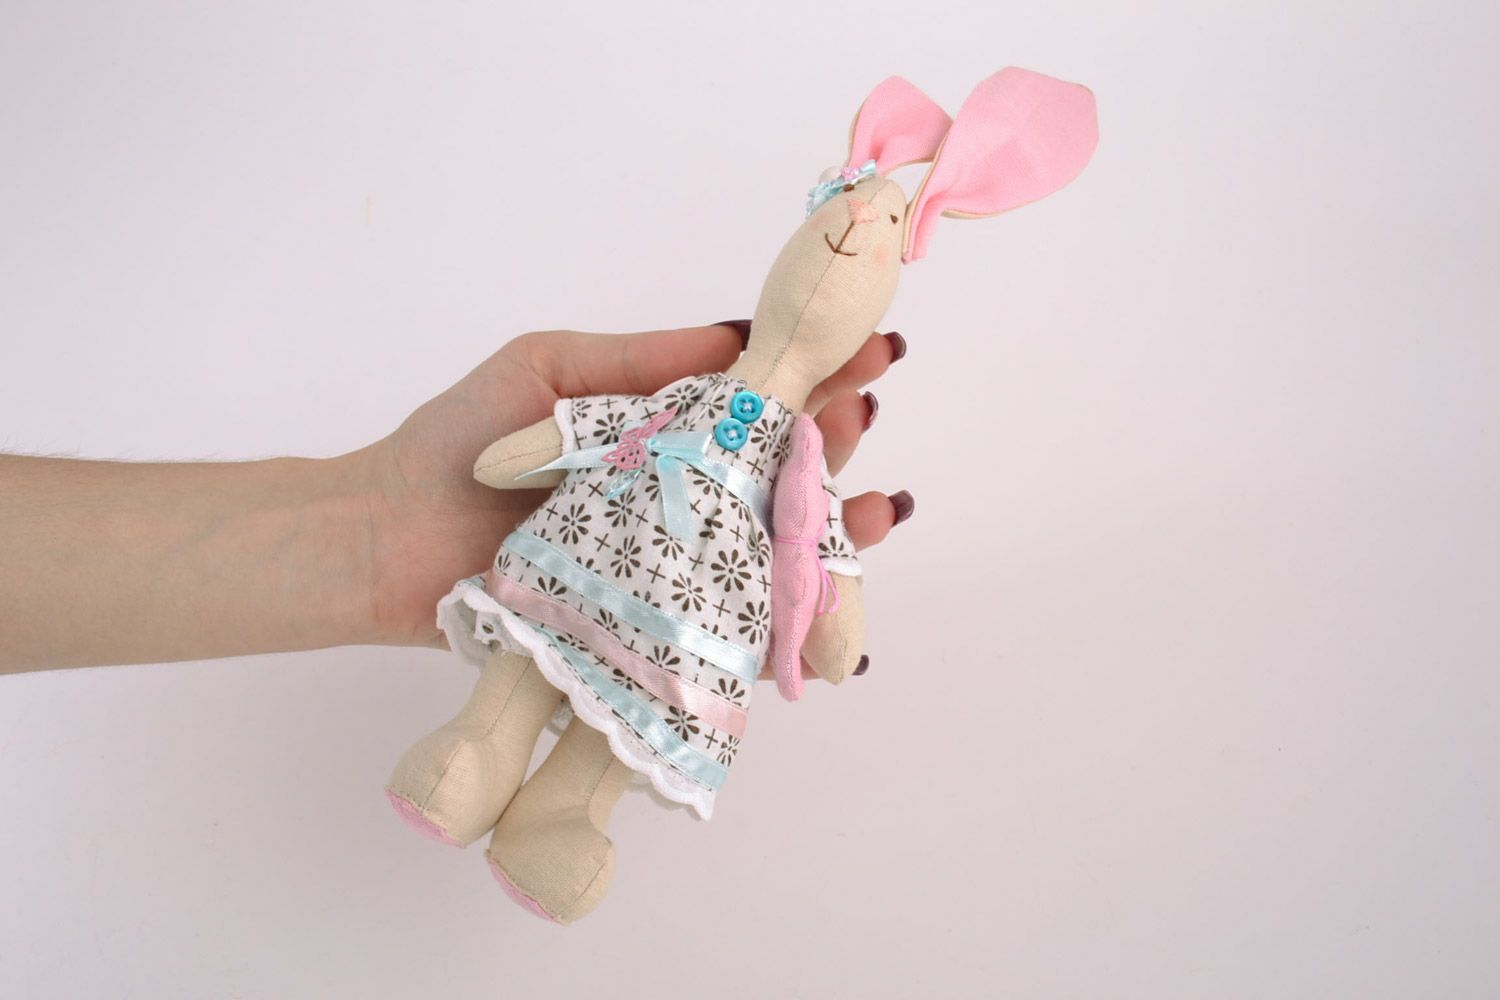 Textil Kuscheltier Hase rosa im Kleid aus Baumwolle schön für Mädchen handmade foto 2